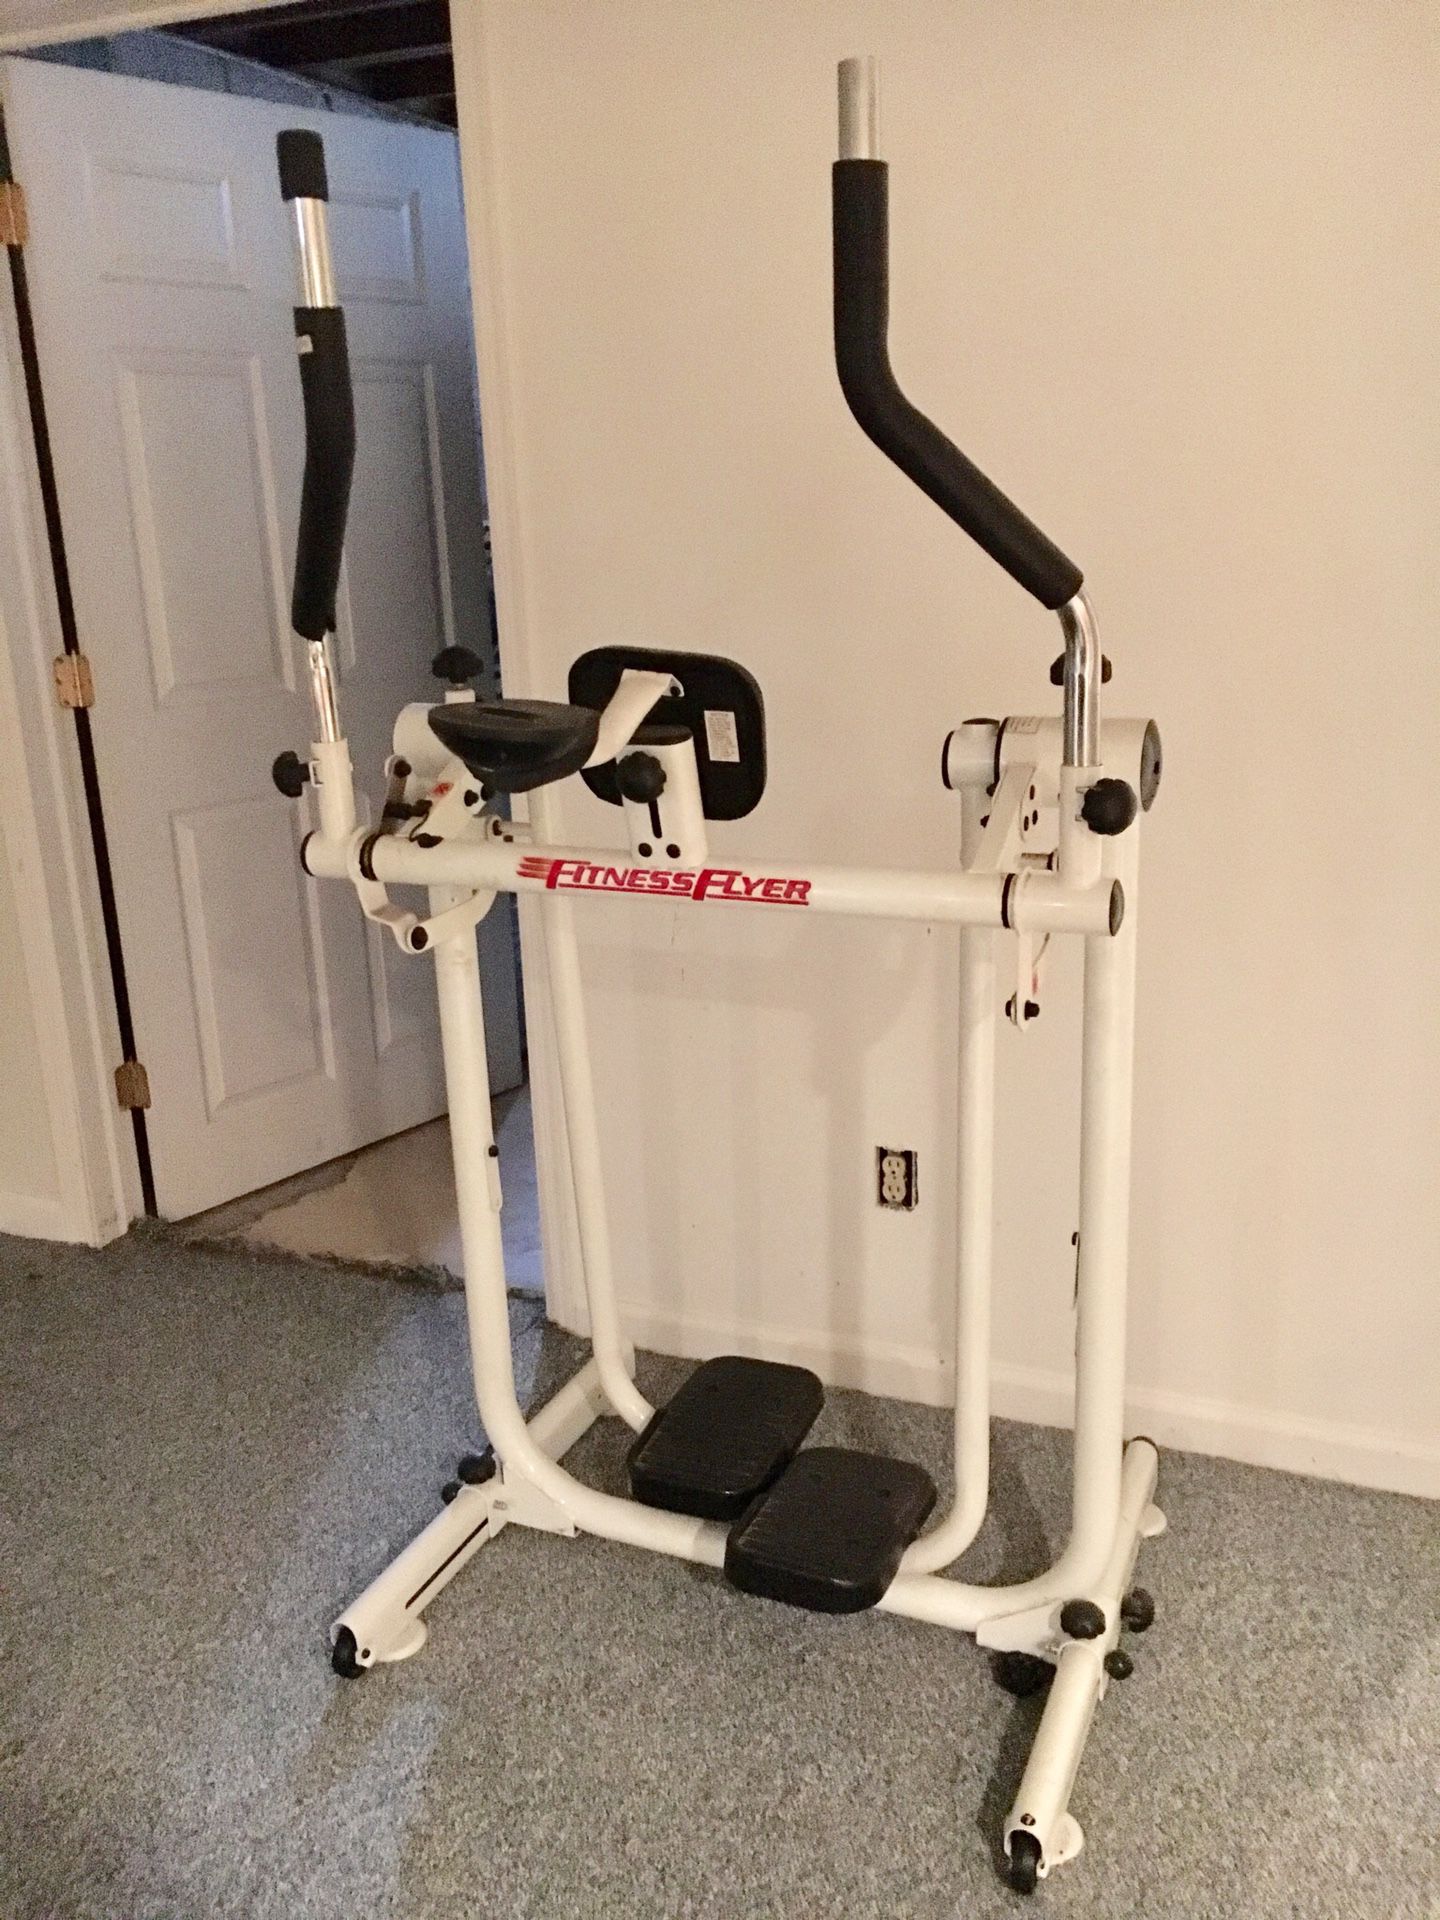 Elliptical exercise fitness equipment